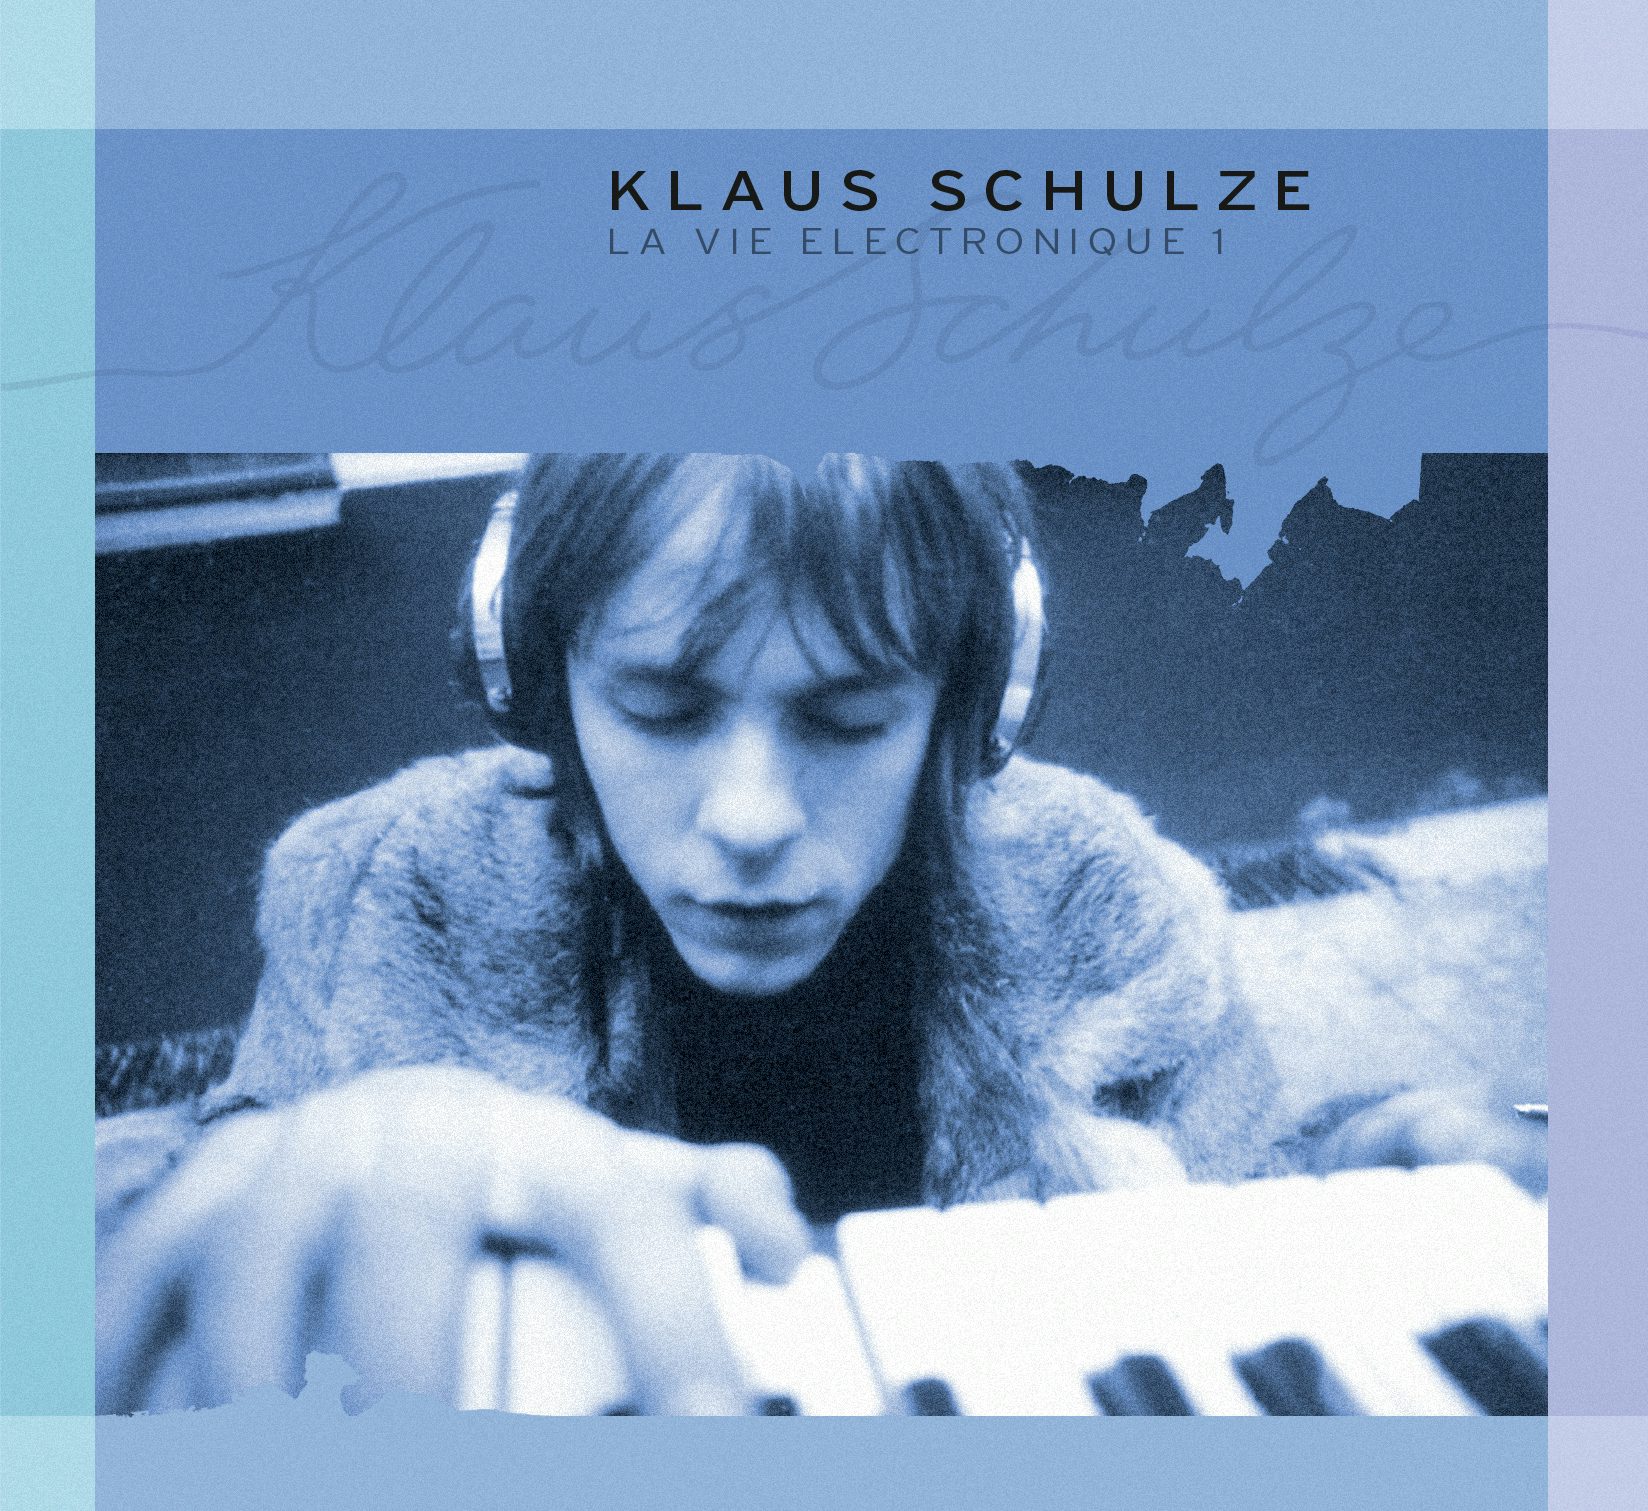 Klaus Schulze LA VIE ELECTRONIQUE 1 CD